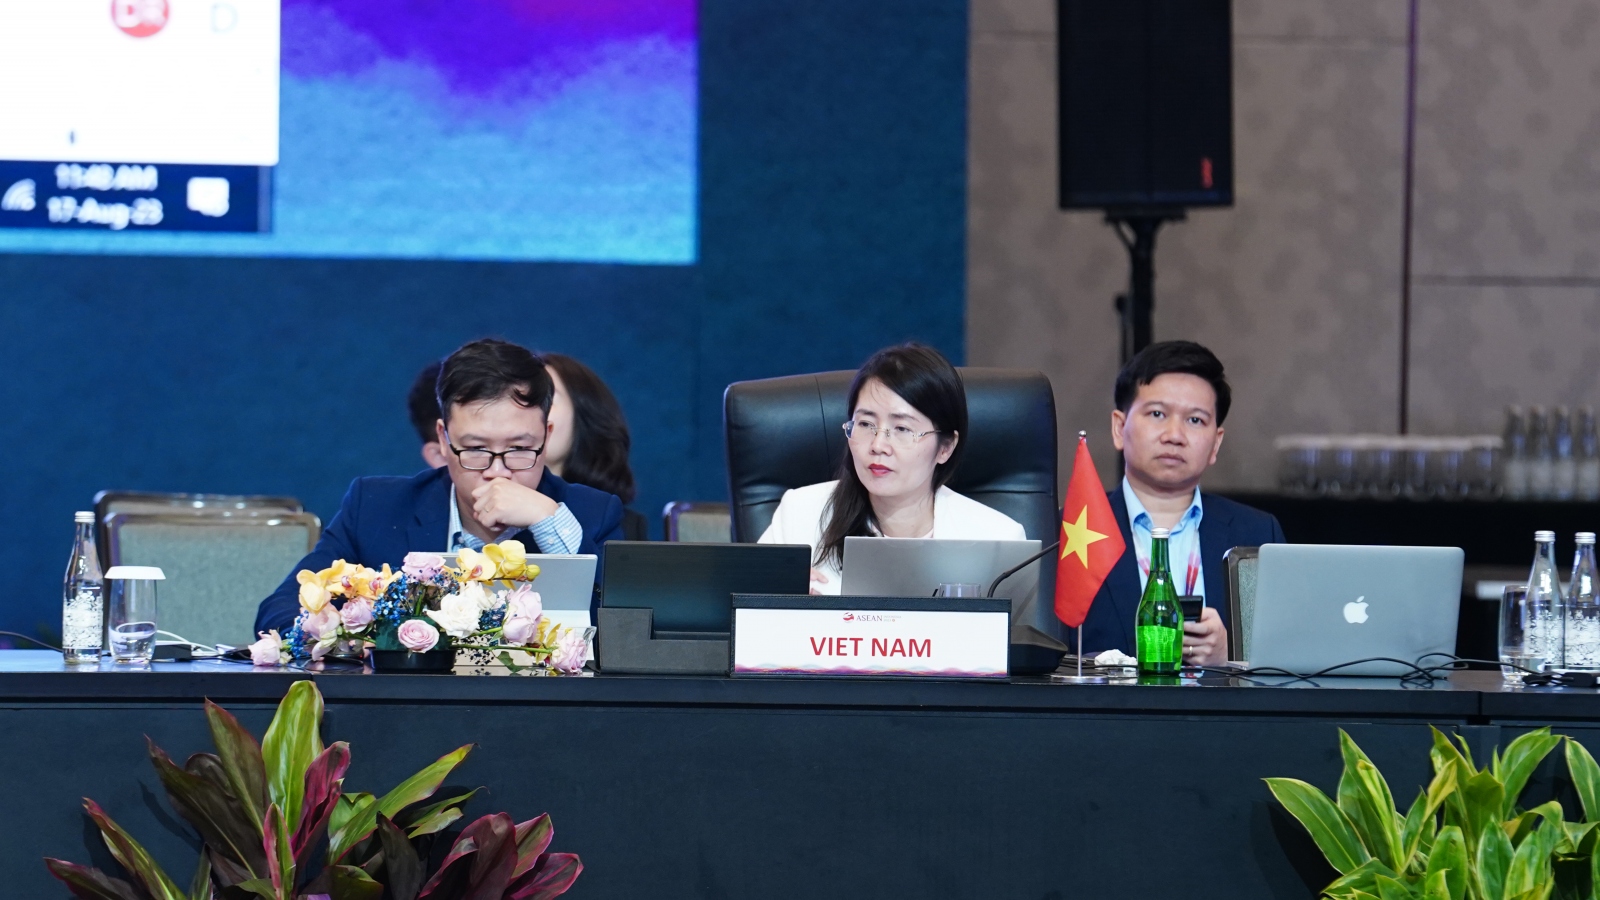 3 mục tiêu cần đạt được tại Hội nghị Bộ trưởng Kinh tế ASEAN lần thứ 55